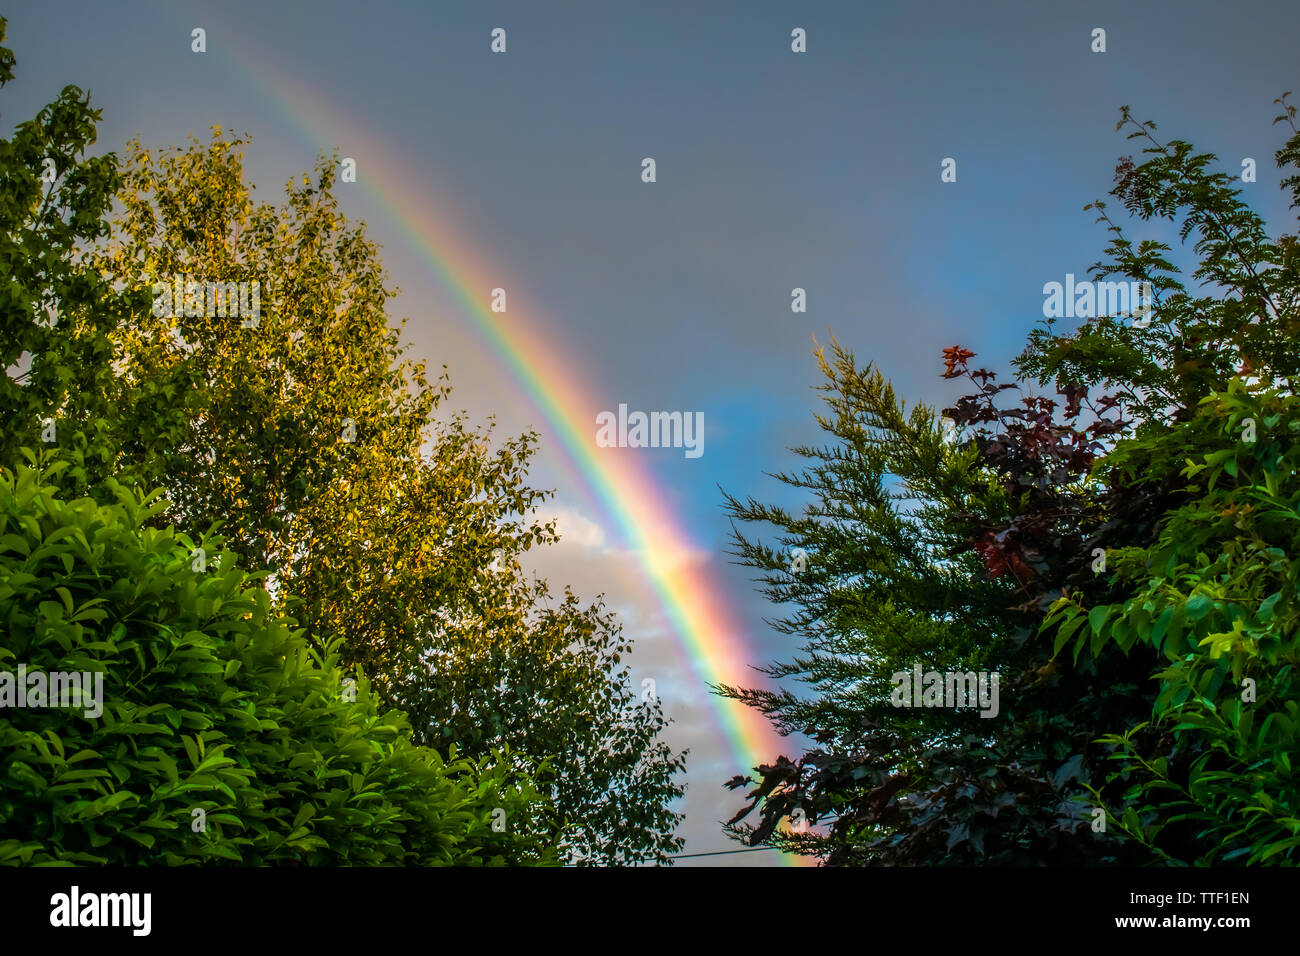 Ein Regenbogen erscheint in einer stürmischen bewölkten Himmel - perfekt von sattem Grün umgeben. Die britische Landschaft und Wetter. Oxfordshire, England. Stockfoto